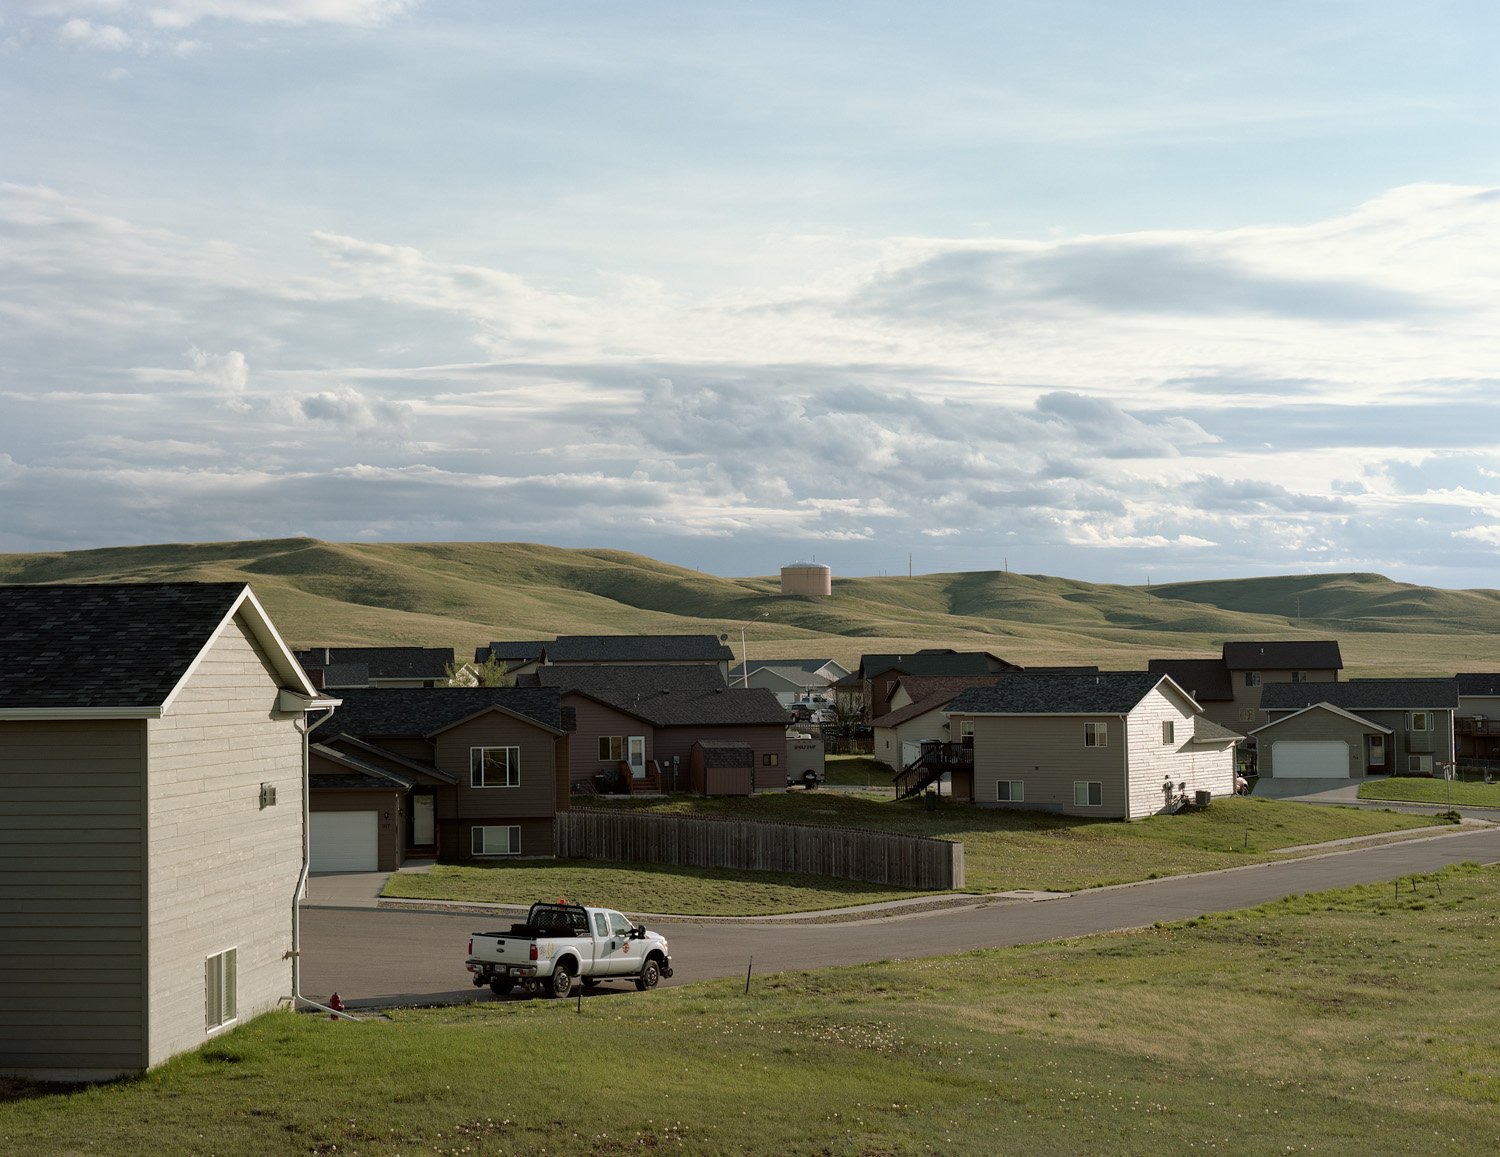 Houses on Radar Hill, Box Elder, South Dakota